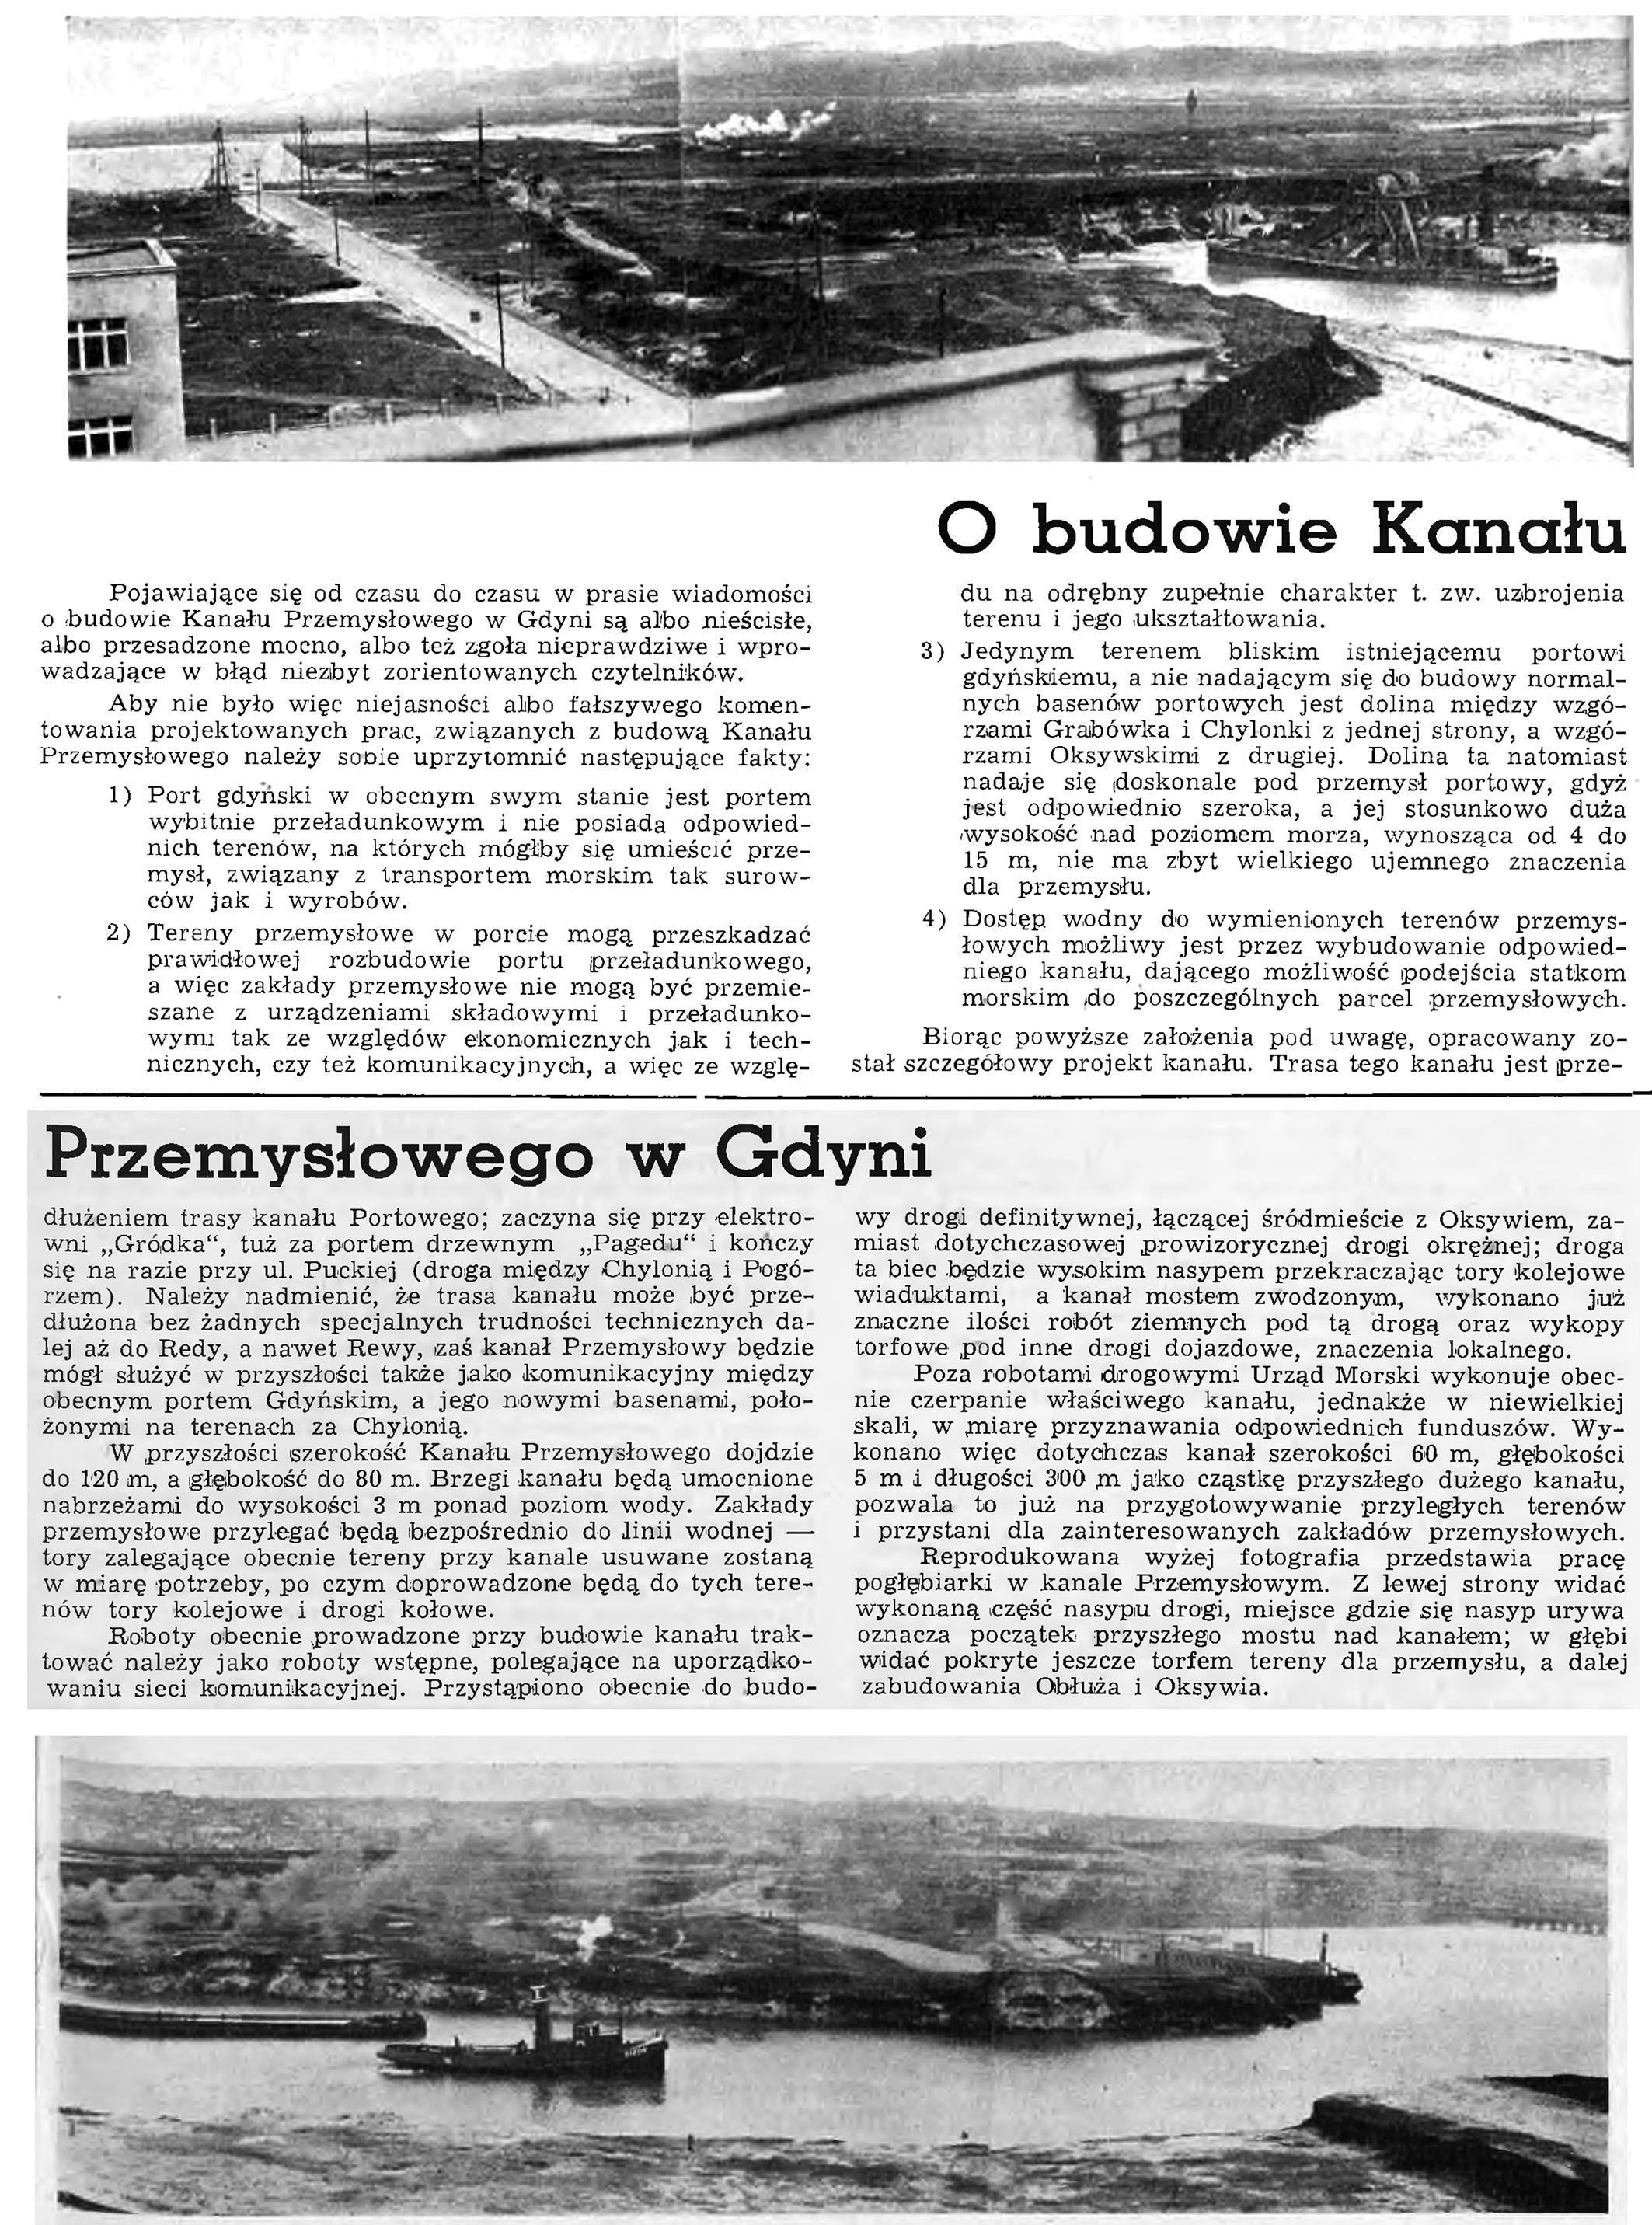 O budowie Kanału Przemysłowego w Gdyni // Wiadomości Portowe. - 1939, nr 3, s. 16-17. - Il.